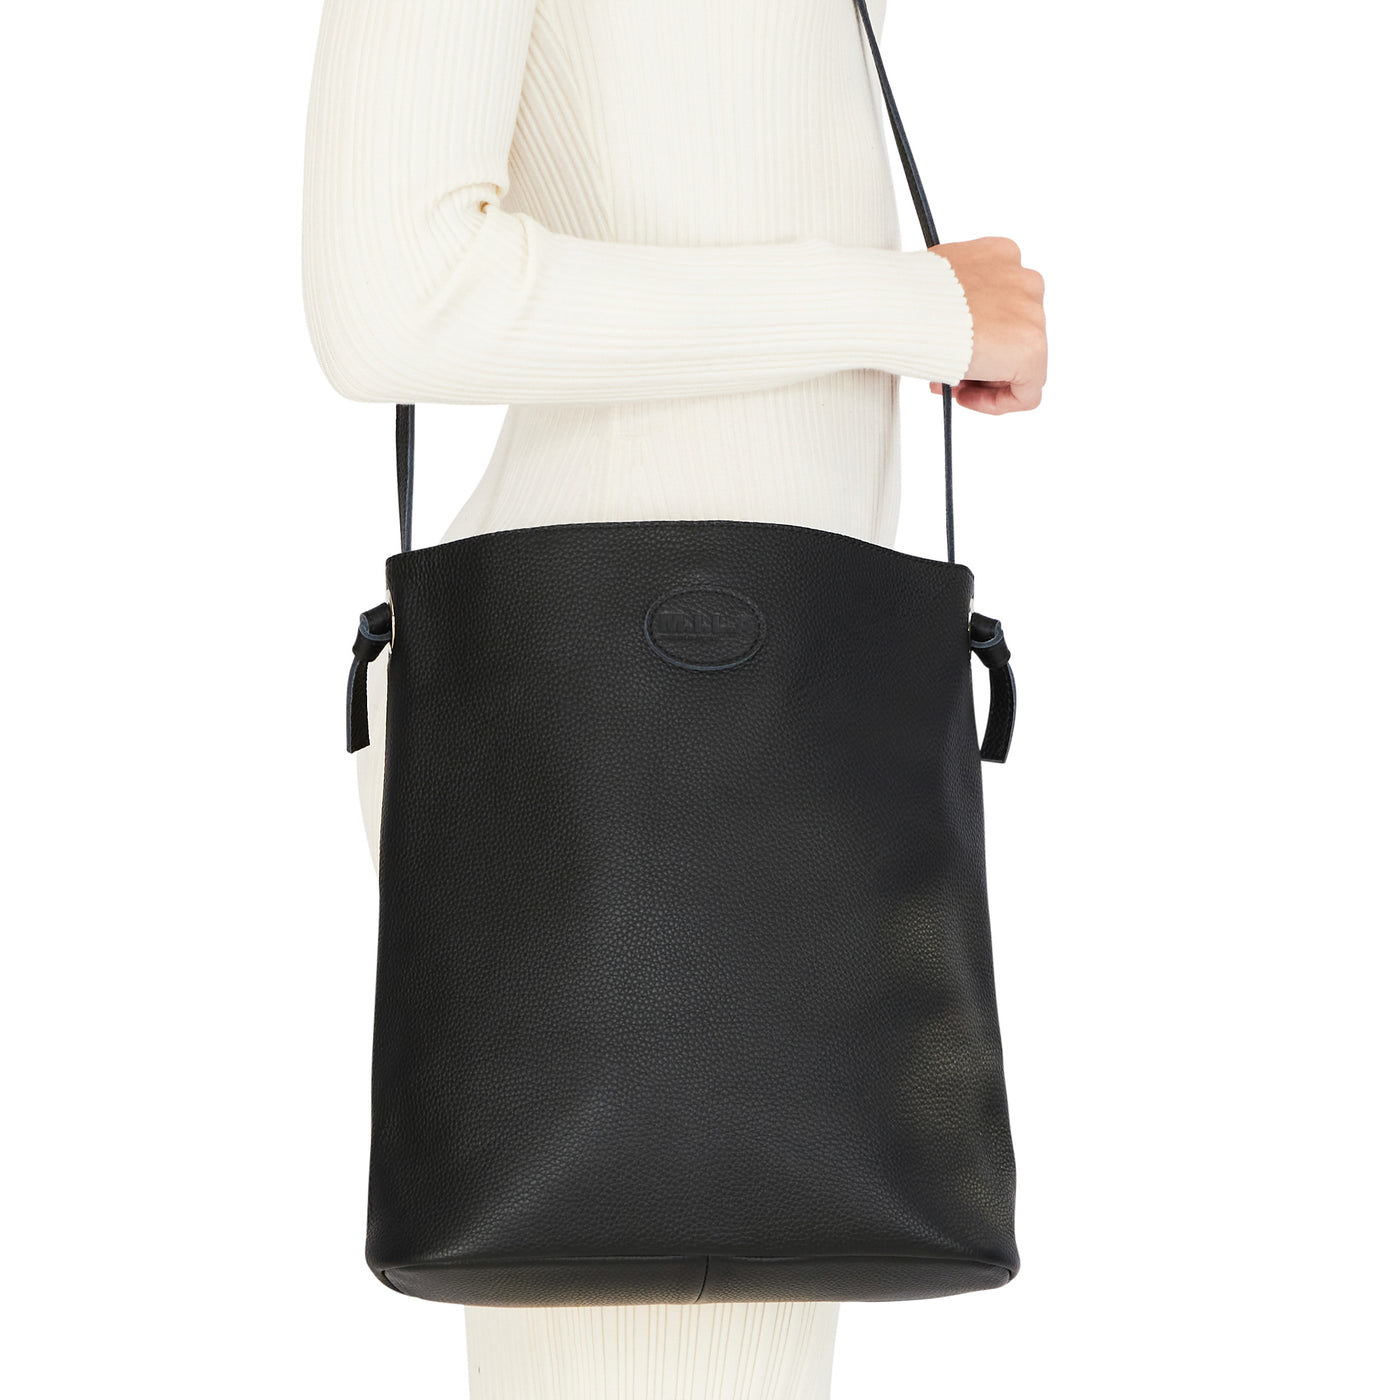 Black Genuine Leather Crossbody Bag, Black Crossbody Bag | Mayko Bags Pink / Add A Crossbody Strap